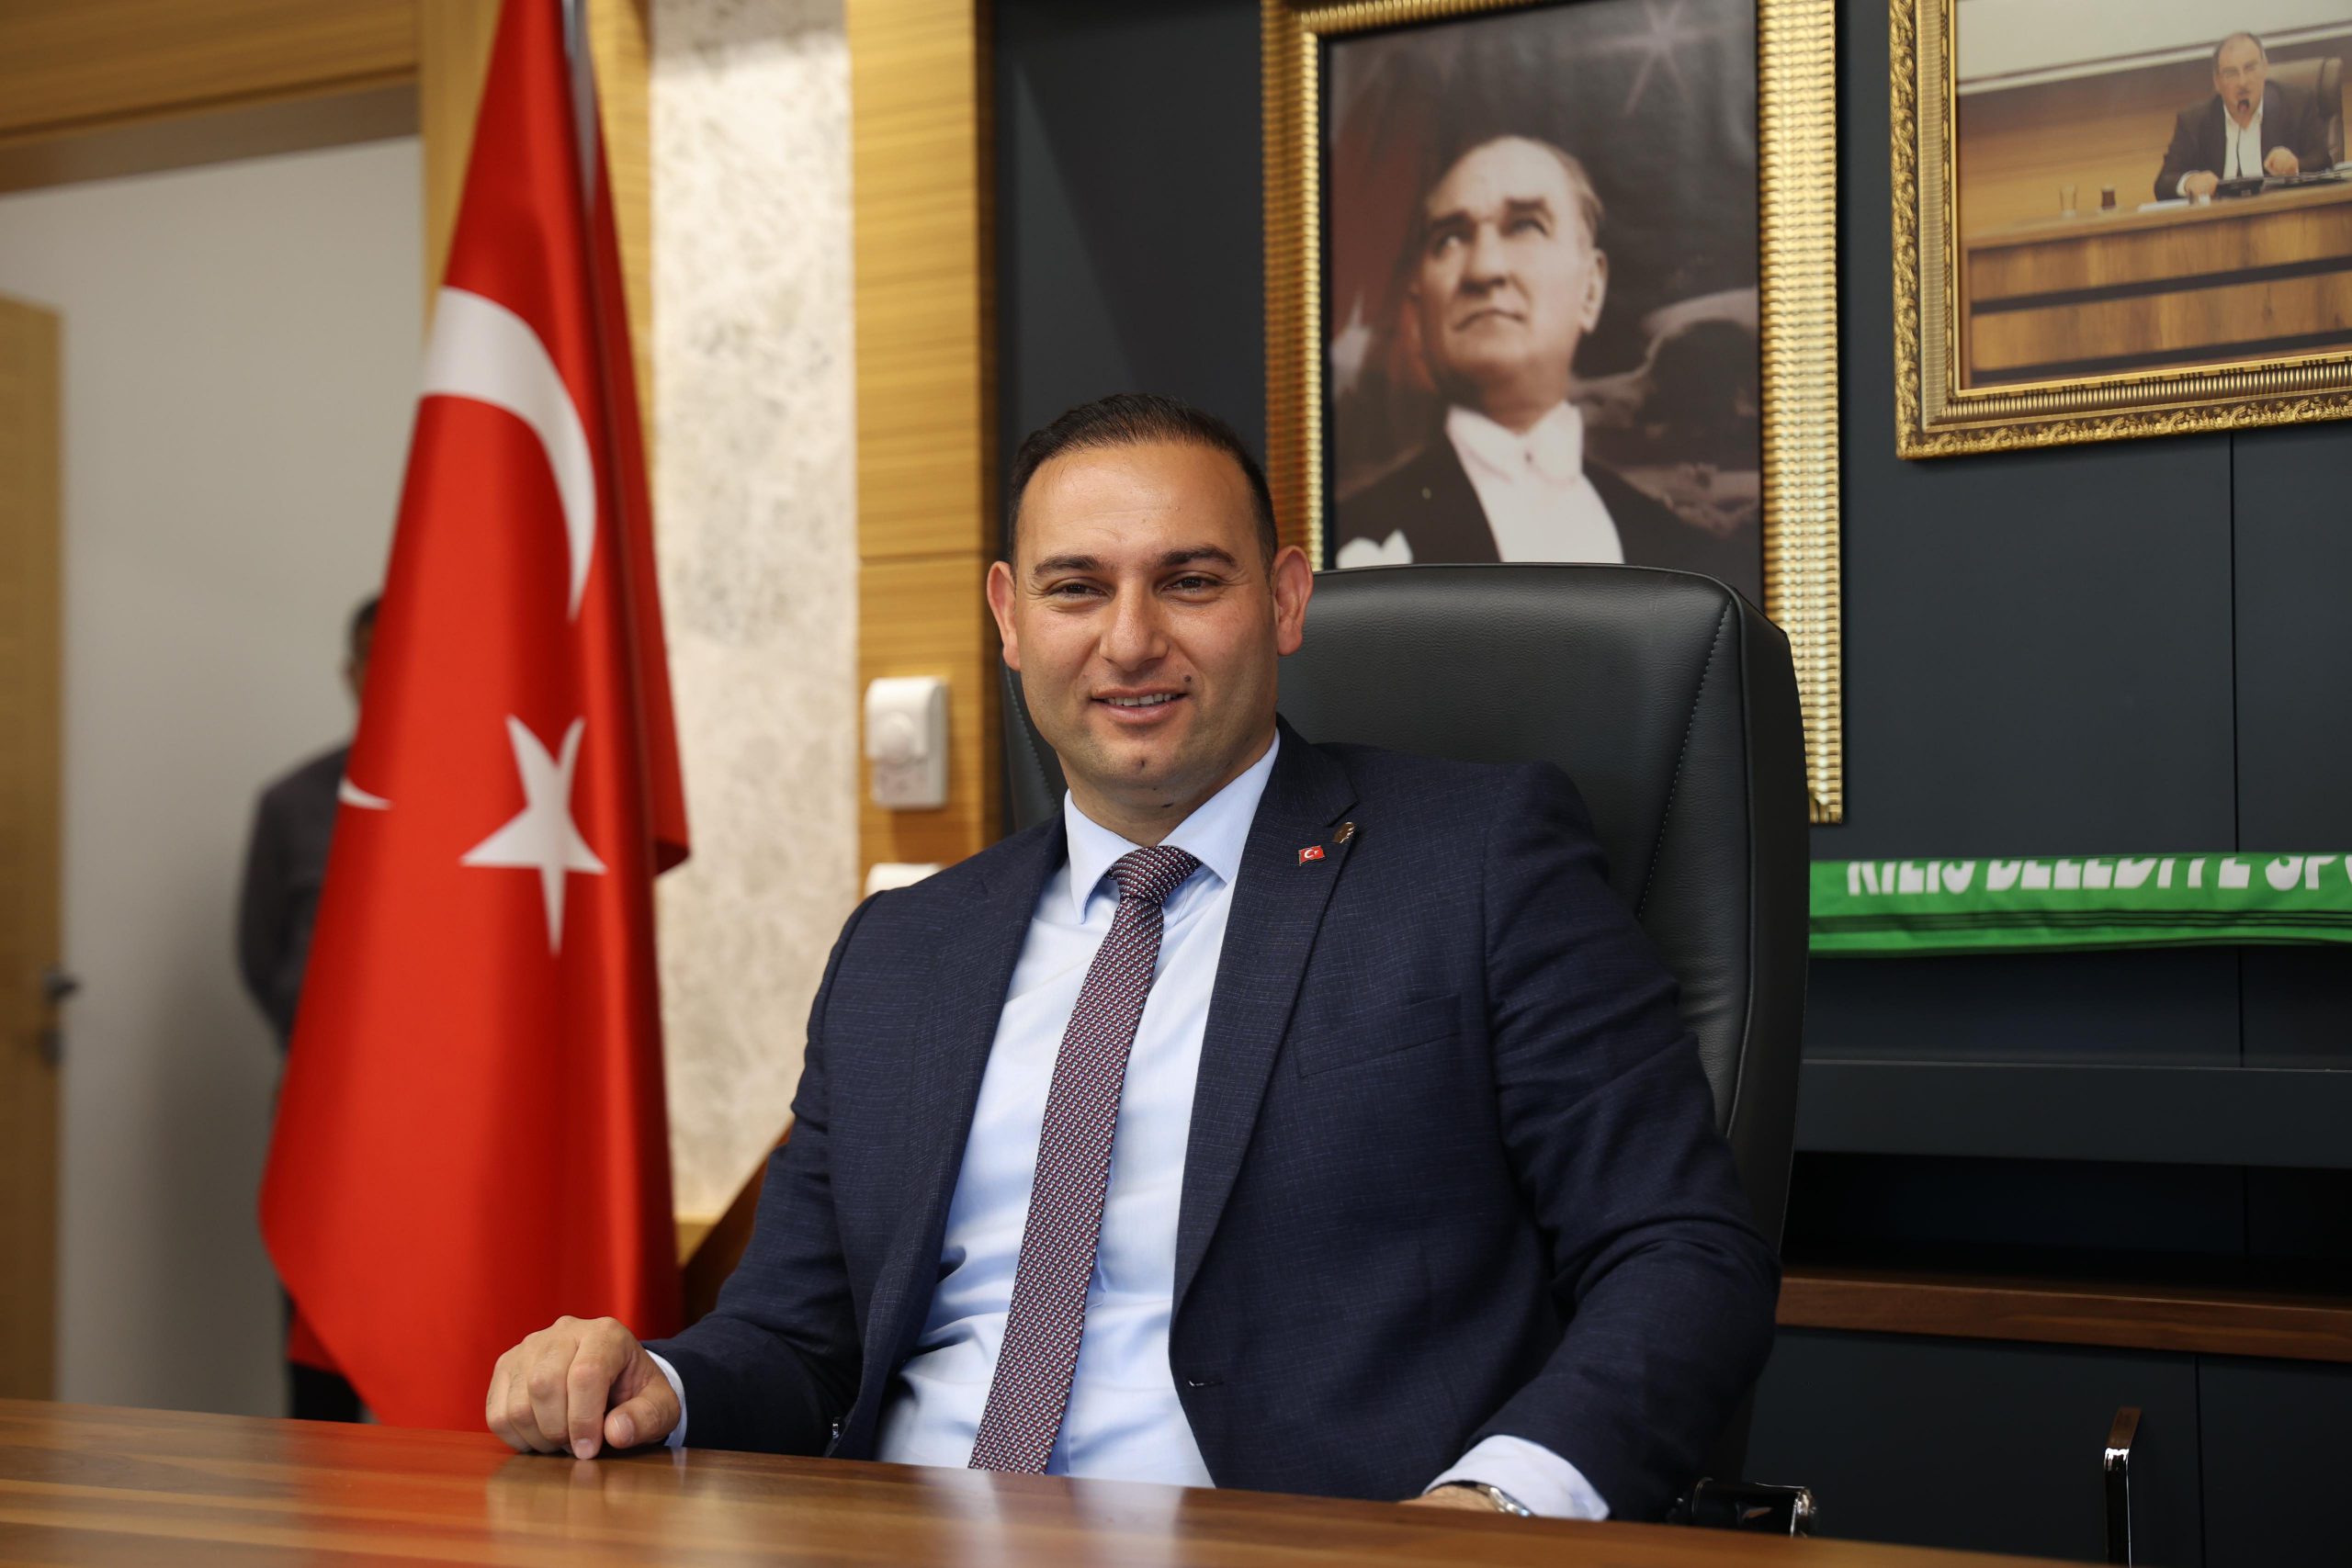 Kilis Belediye Başkanı: AKP'liler annelerini bile işe almıştı